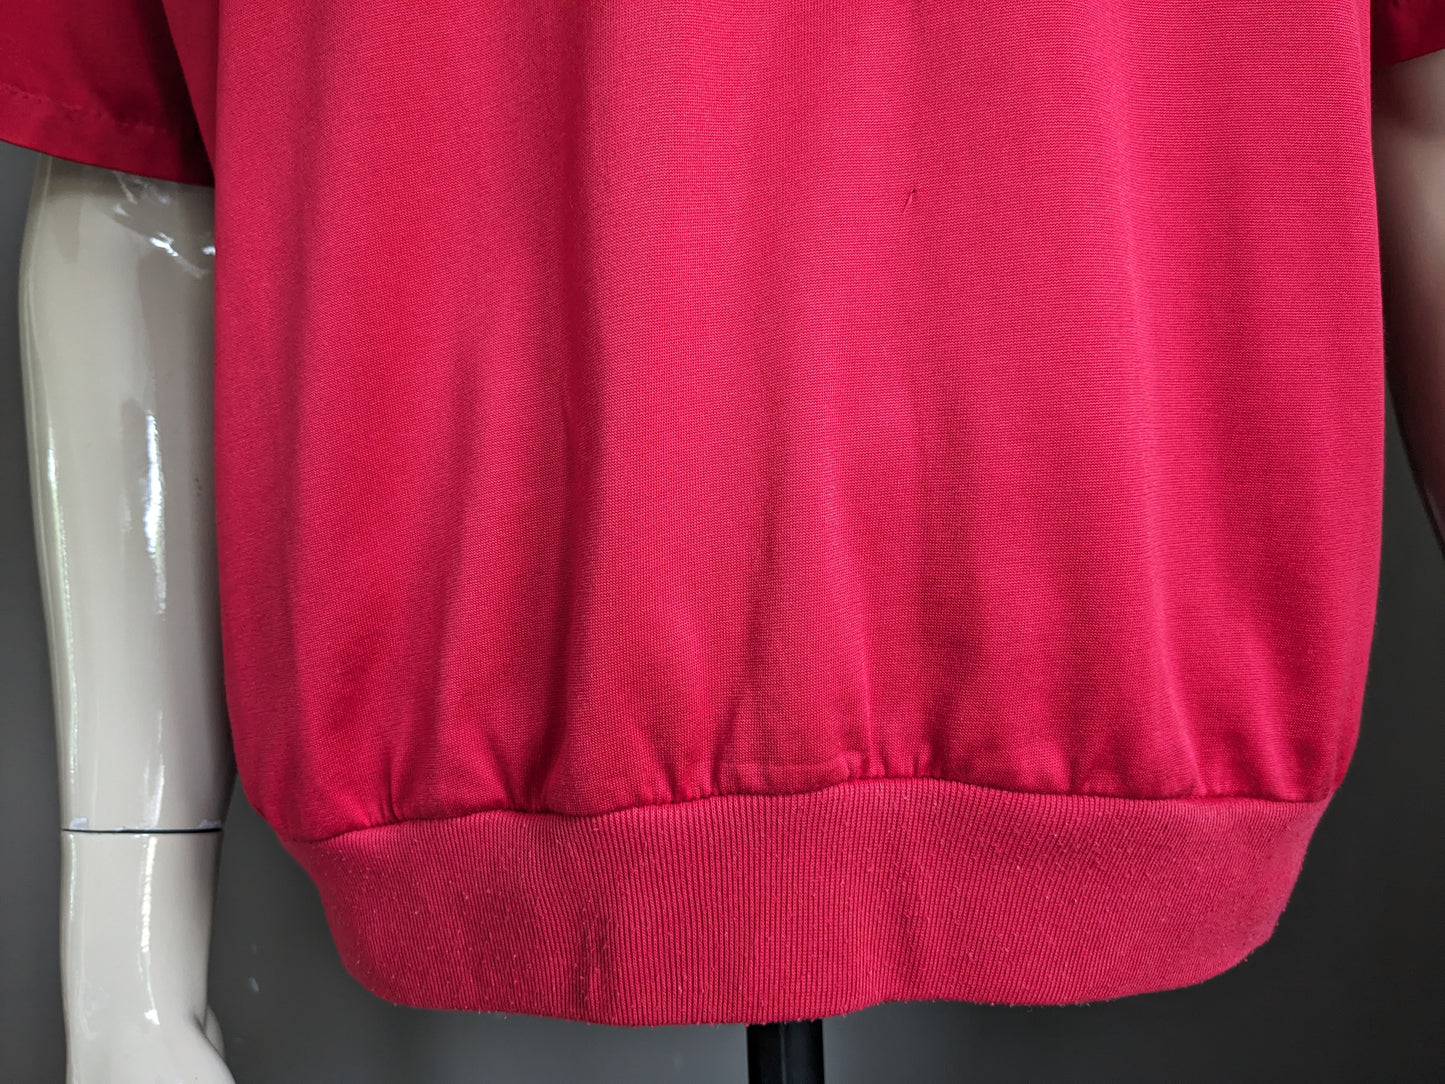 Gianni M di Hajo Vintage Polo con fascia elastica. Rosso colorato. Taglia L / XL.